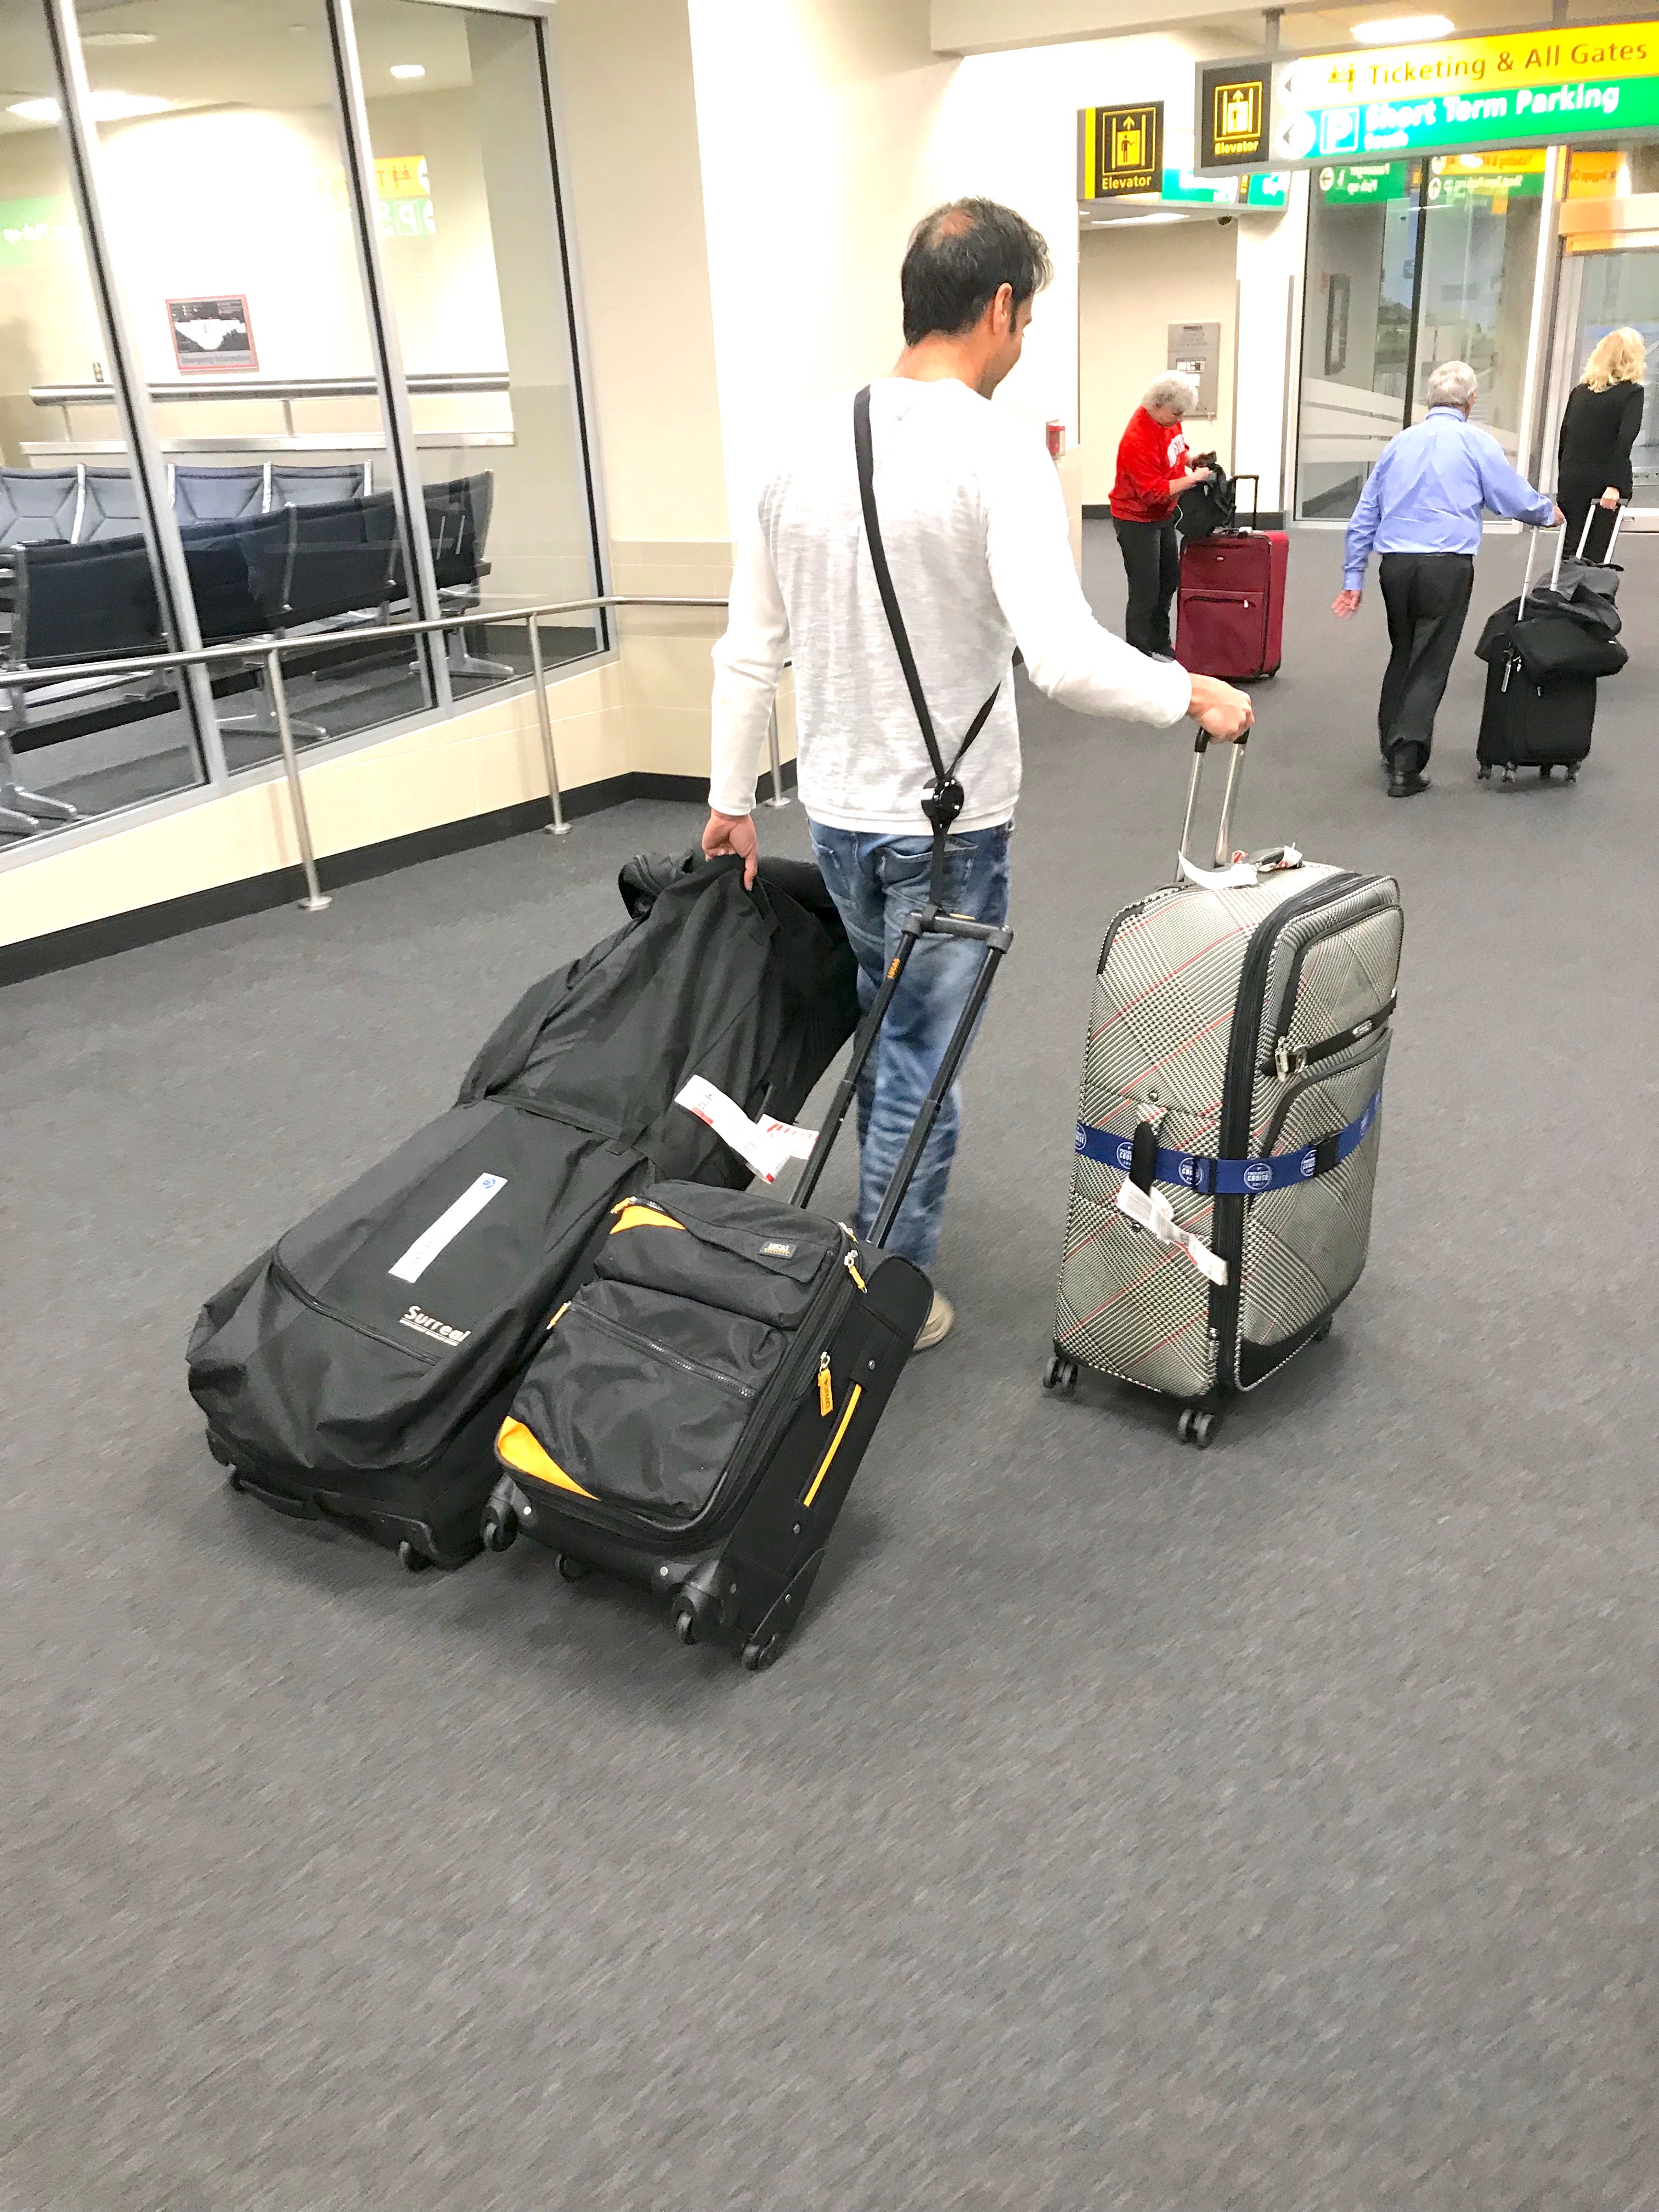 southwest airlines stroller bag